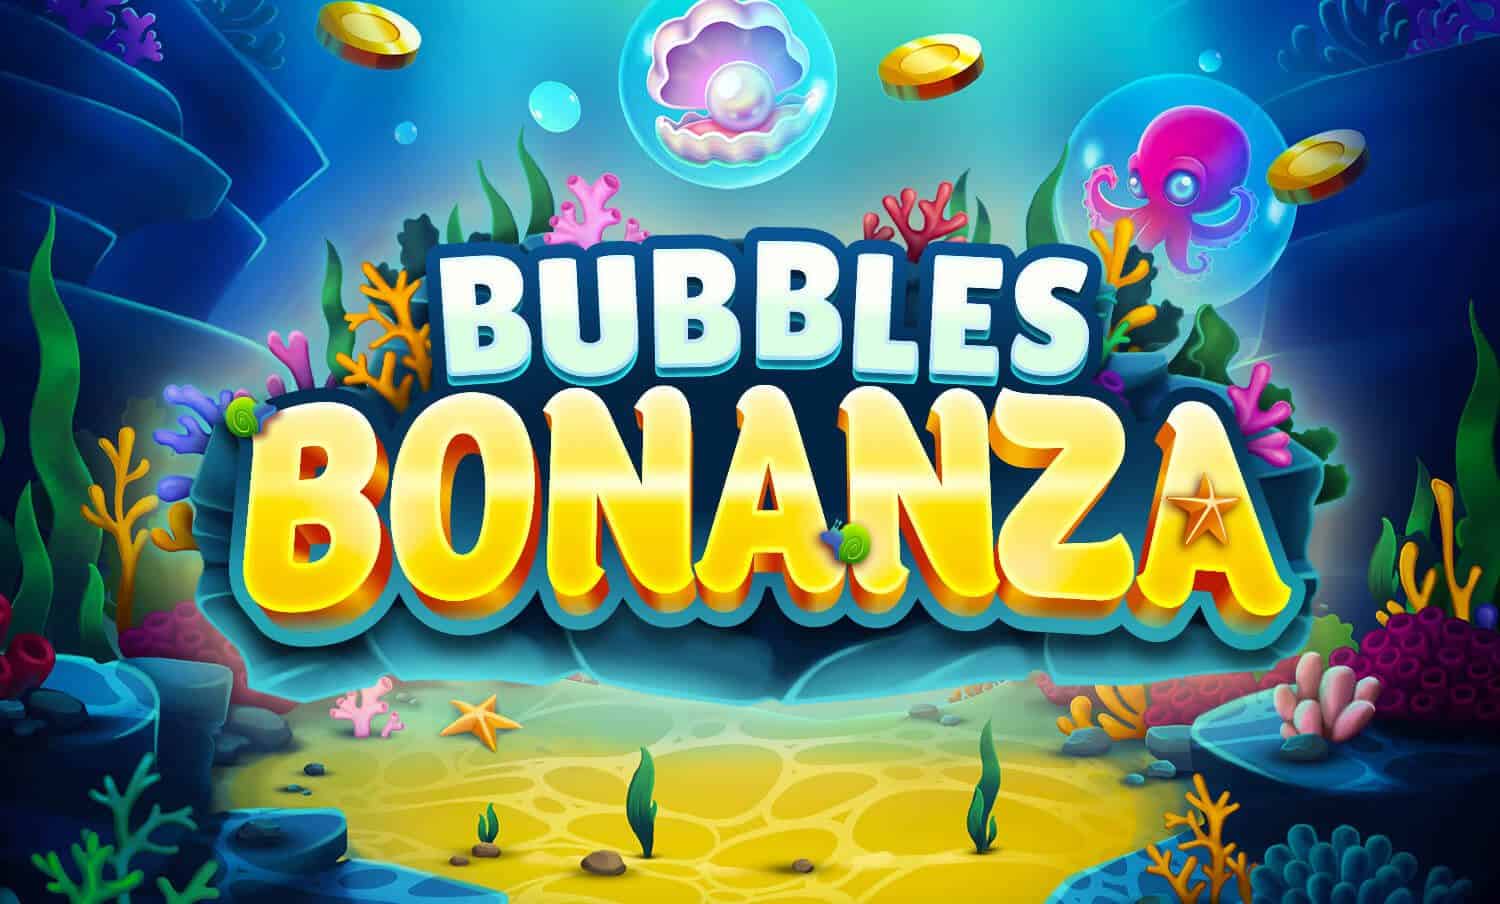 Bubbles Bonanza slot cover image